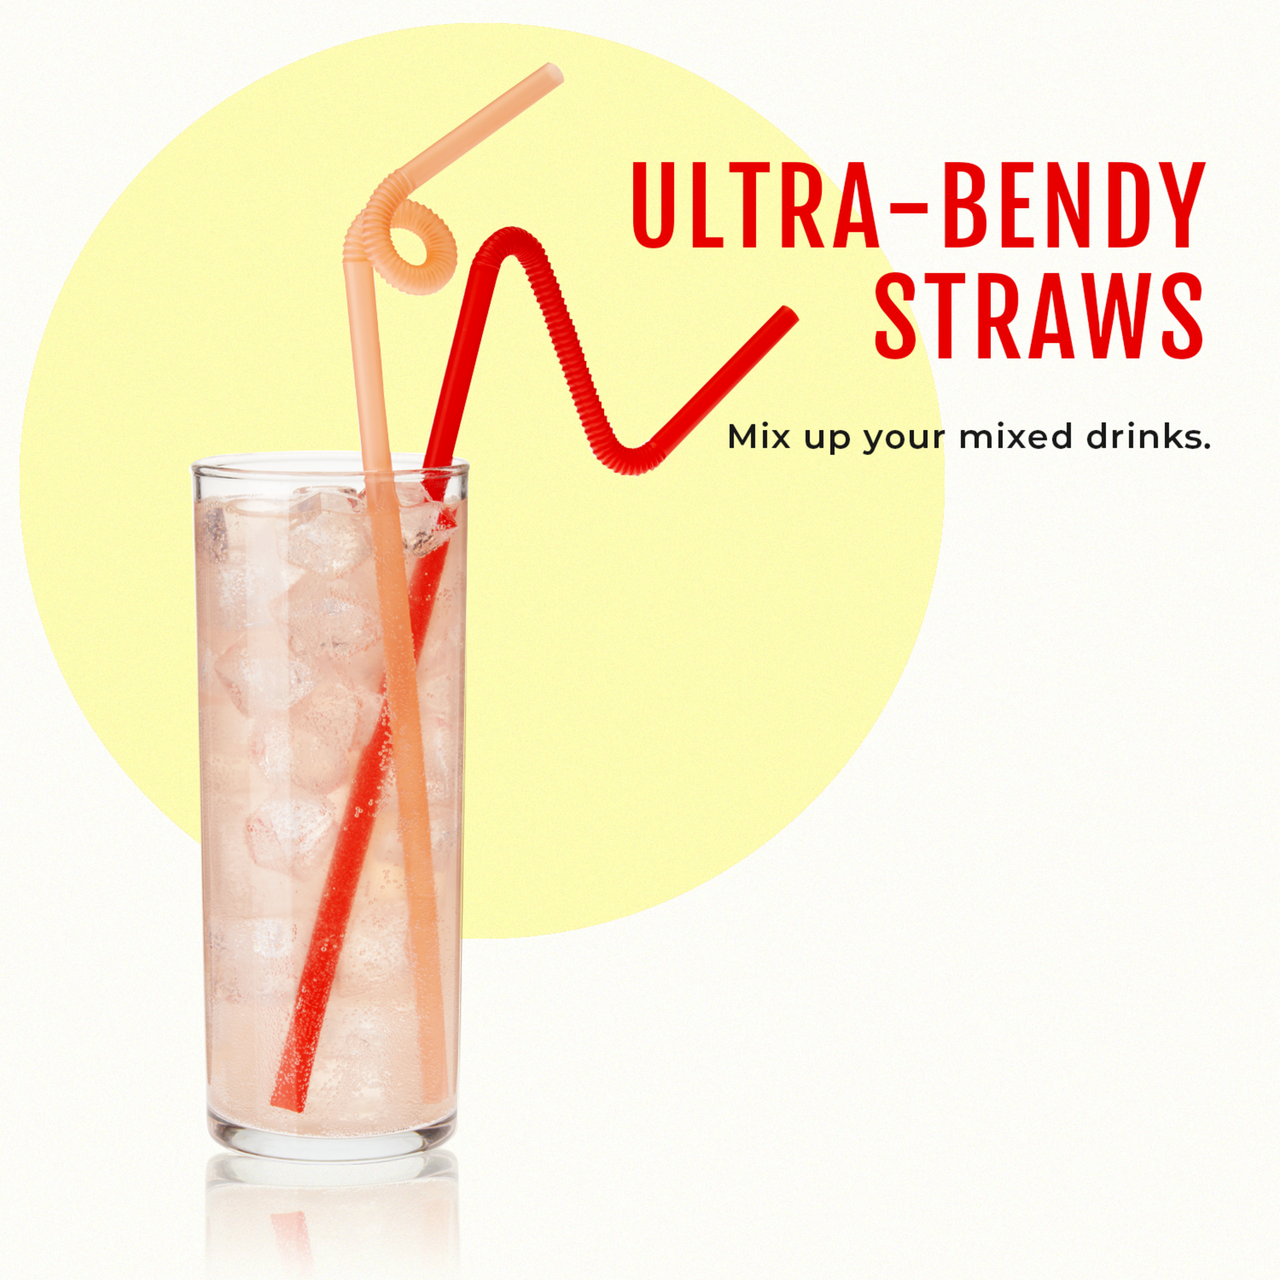 Ultra-Bendy Straws by Savoy